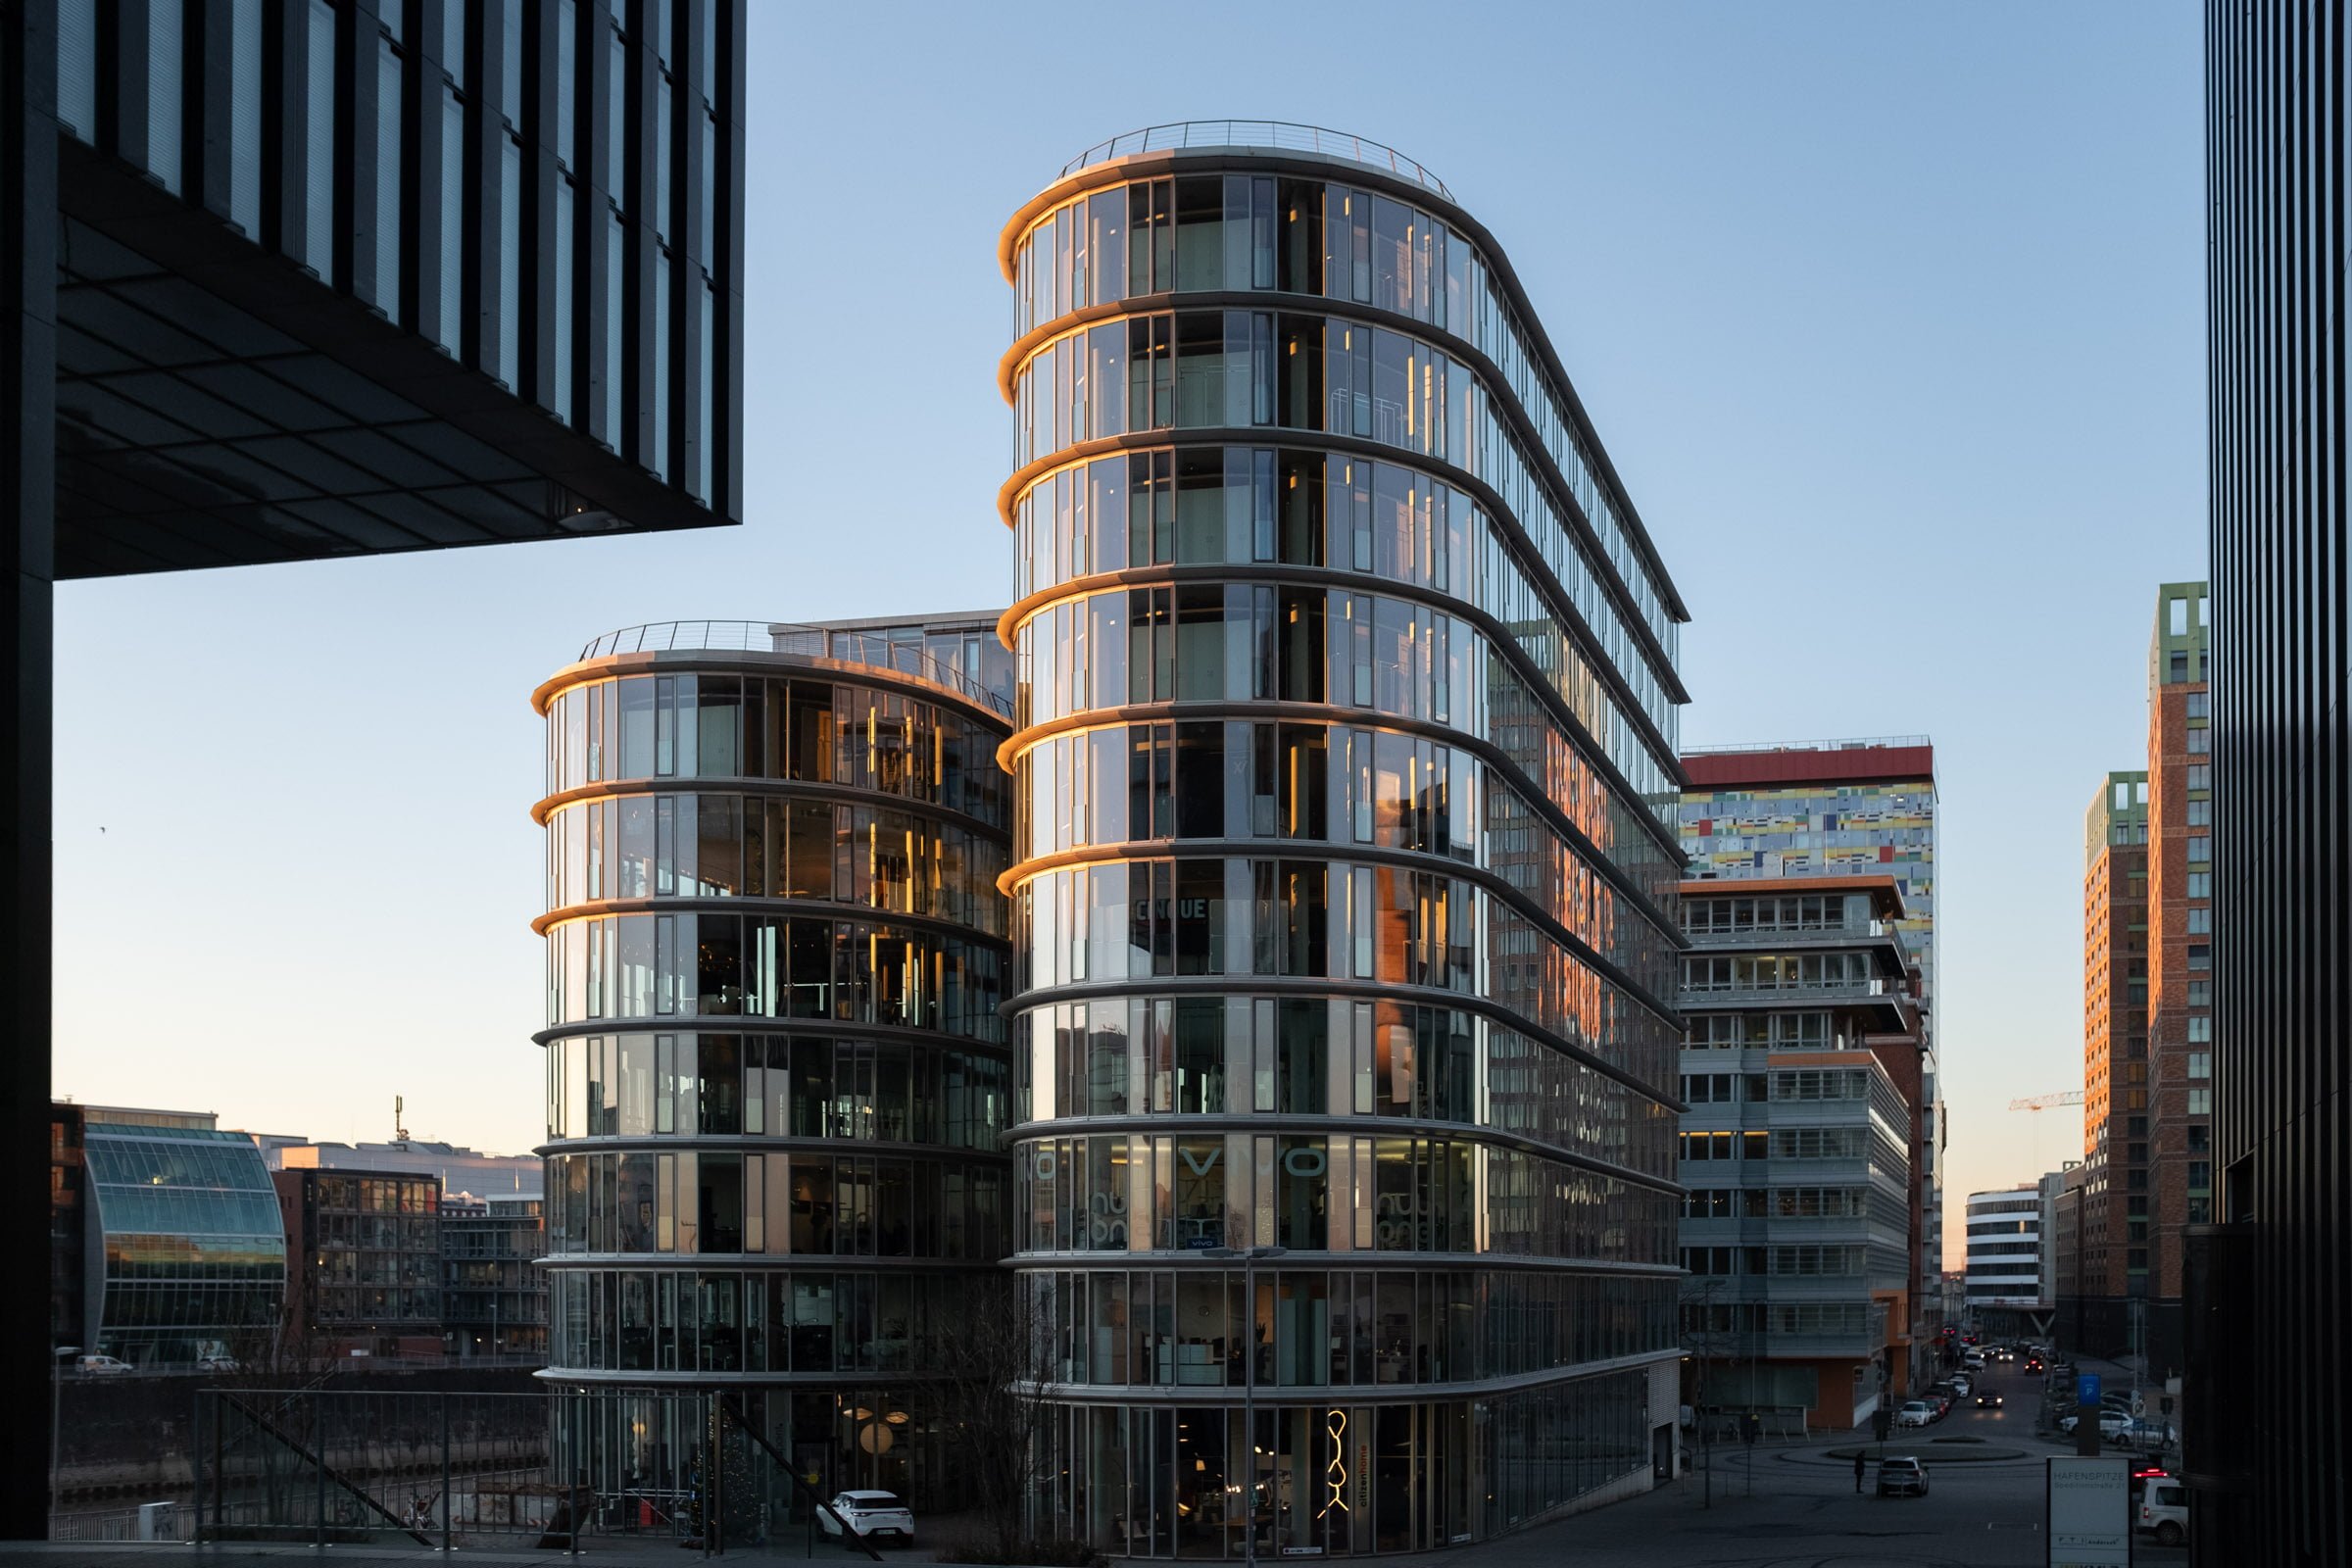 Architekturfoto moderner Architektur in Düsseldorf. Rundes Gebäude wird vom Sonnenlicht angestrahlt